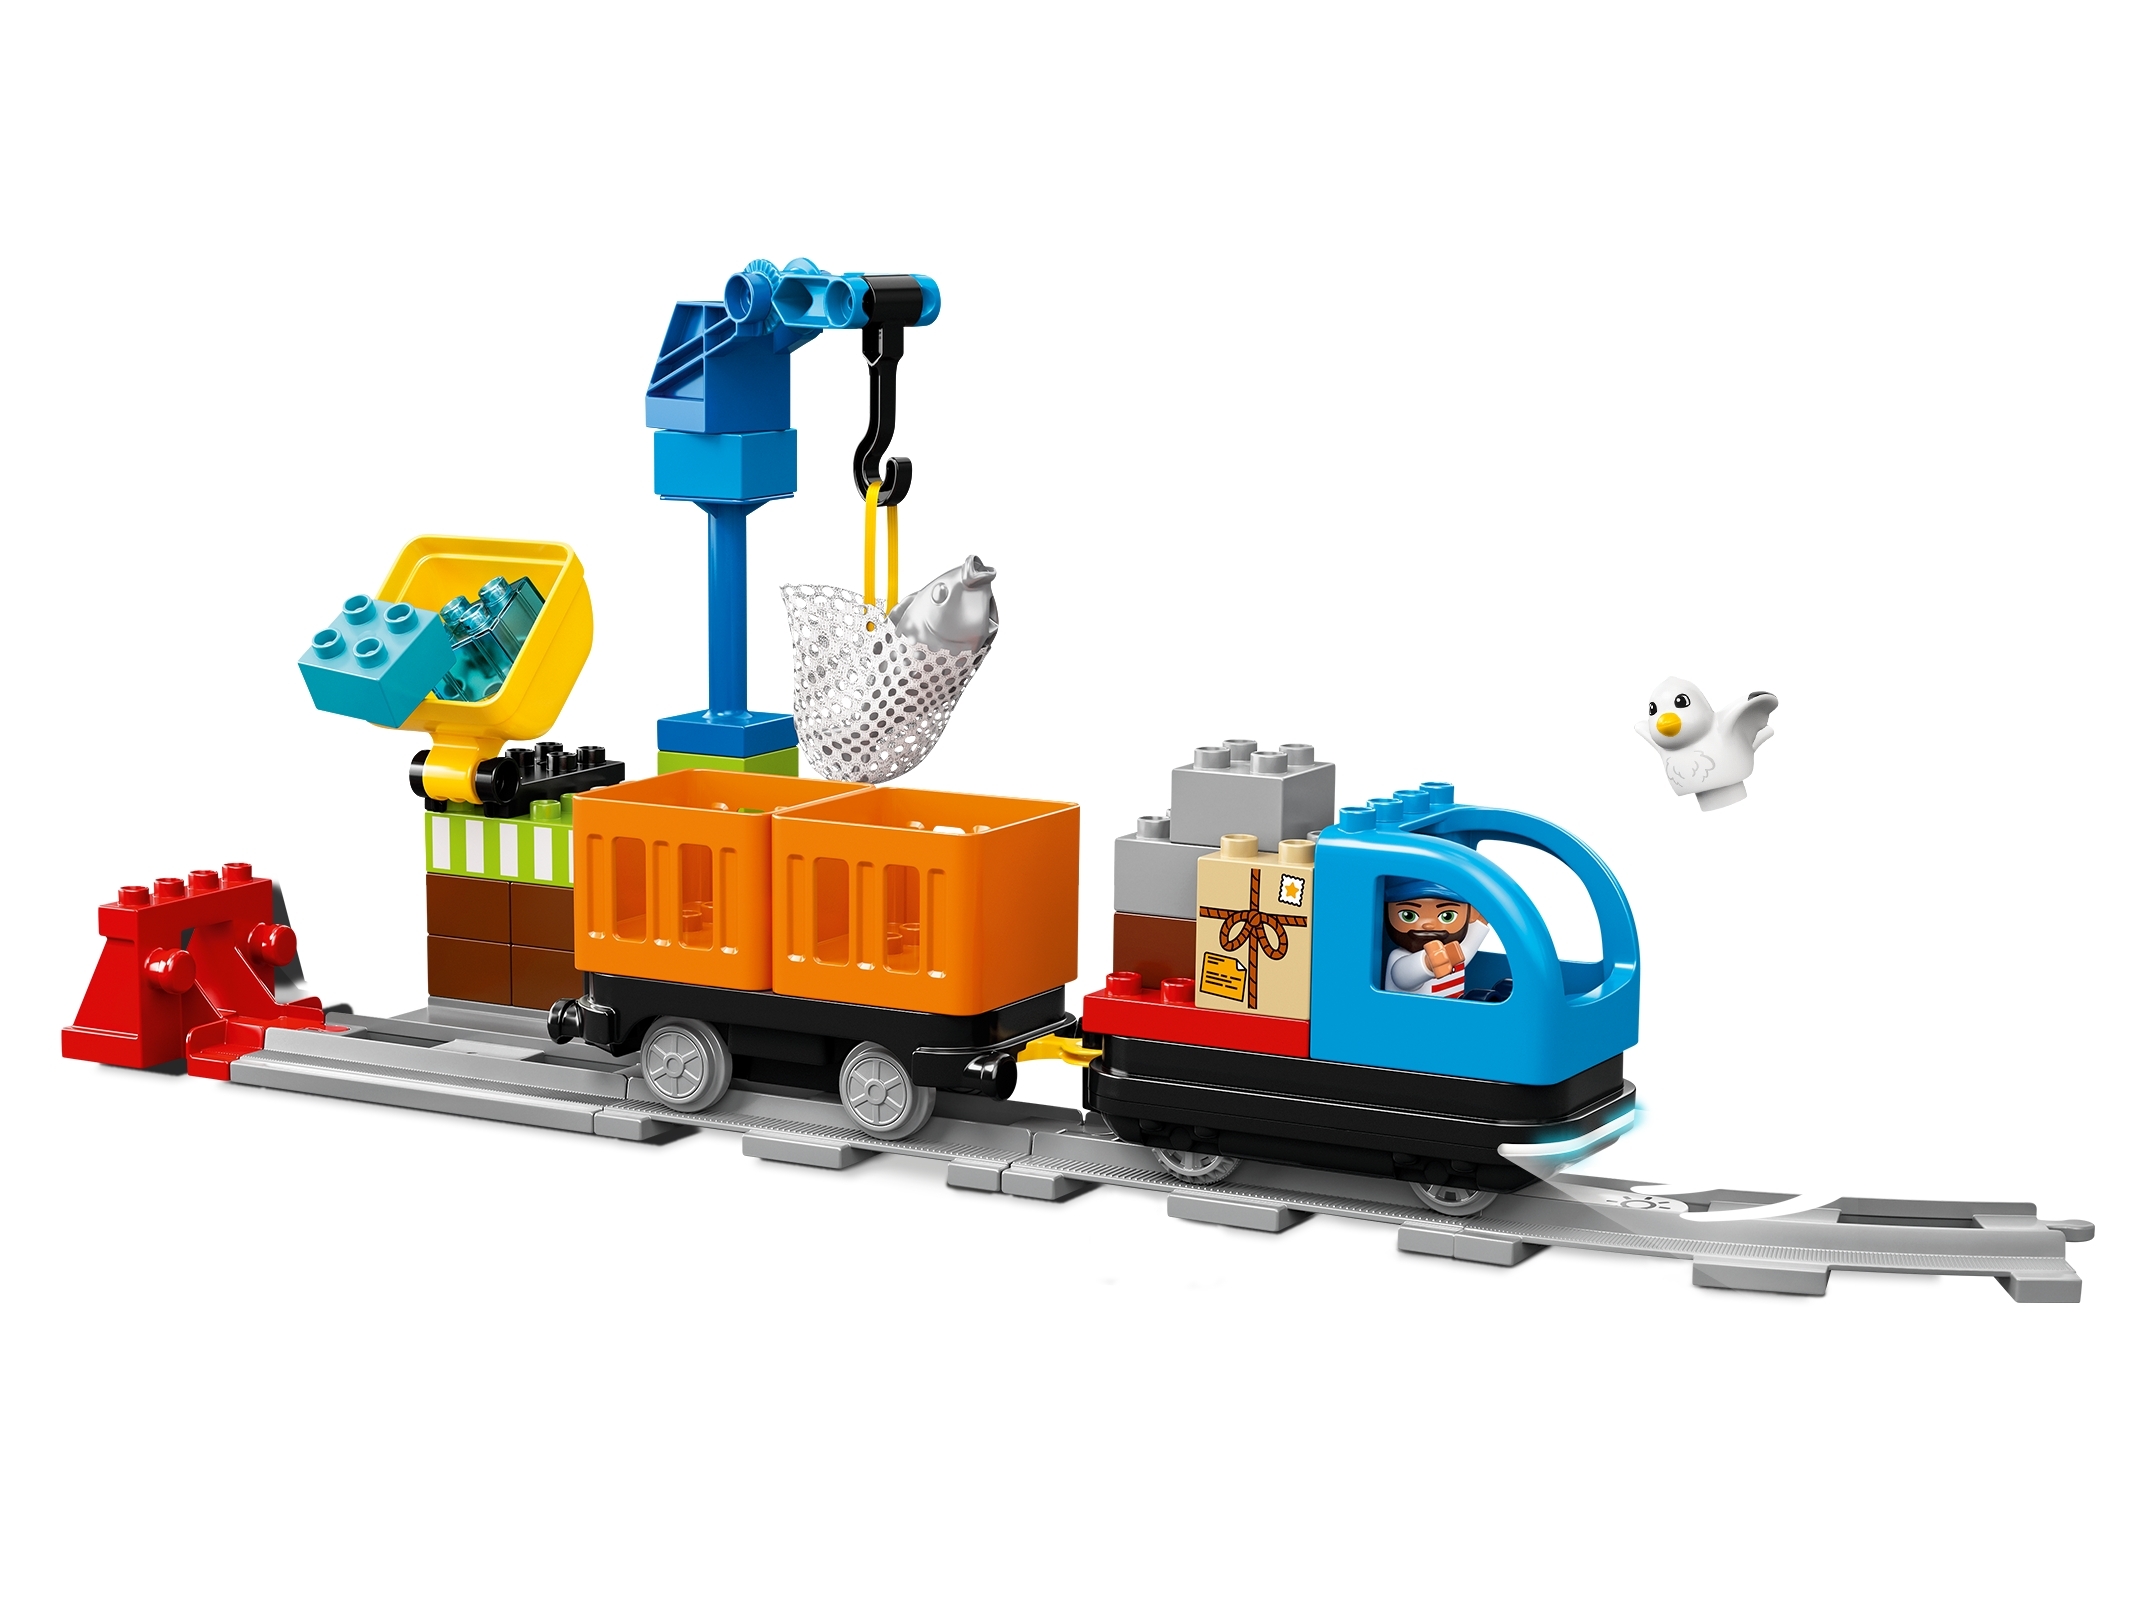 LEGO DUPLO Trains Push Train - DUPLO Trains Push Train . Buy No